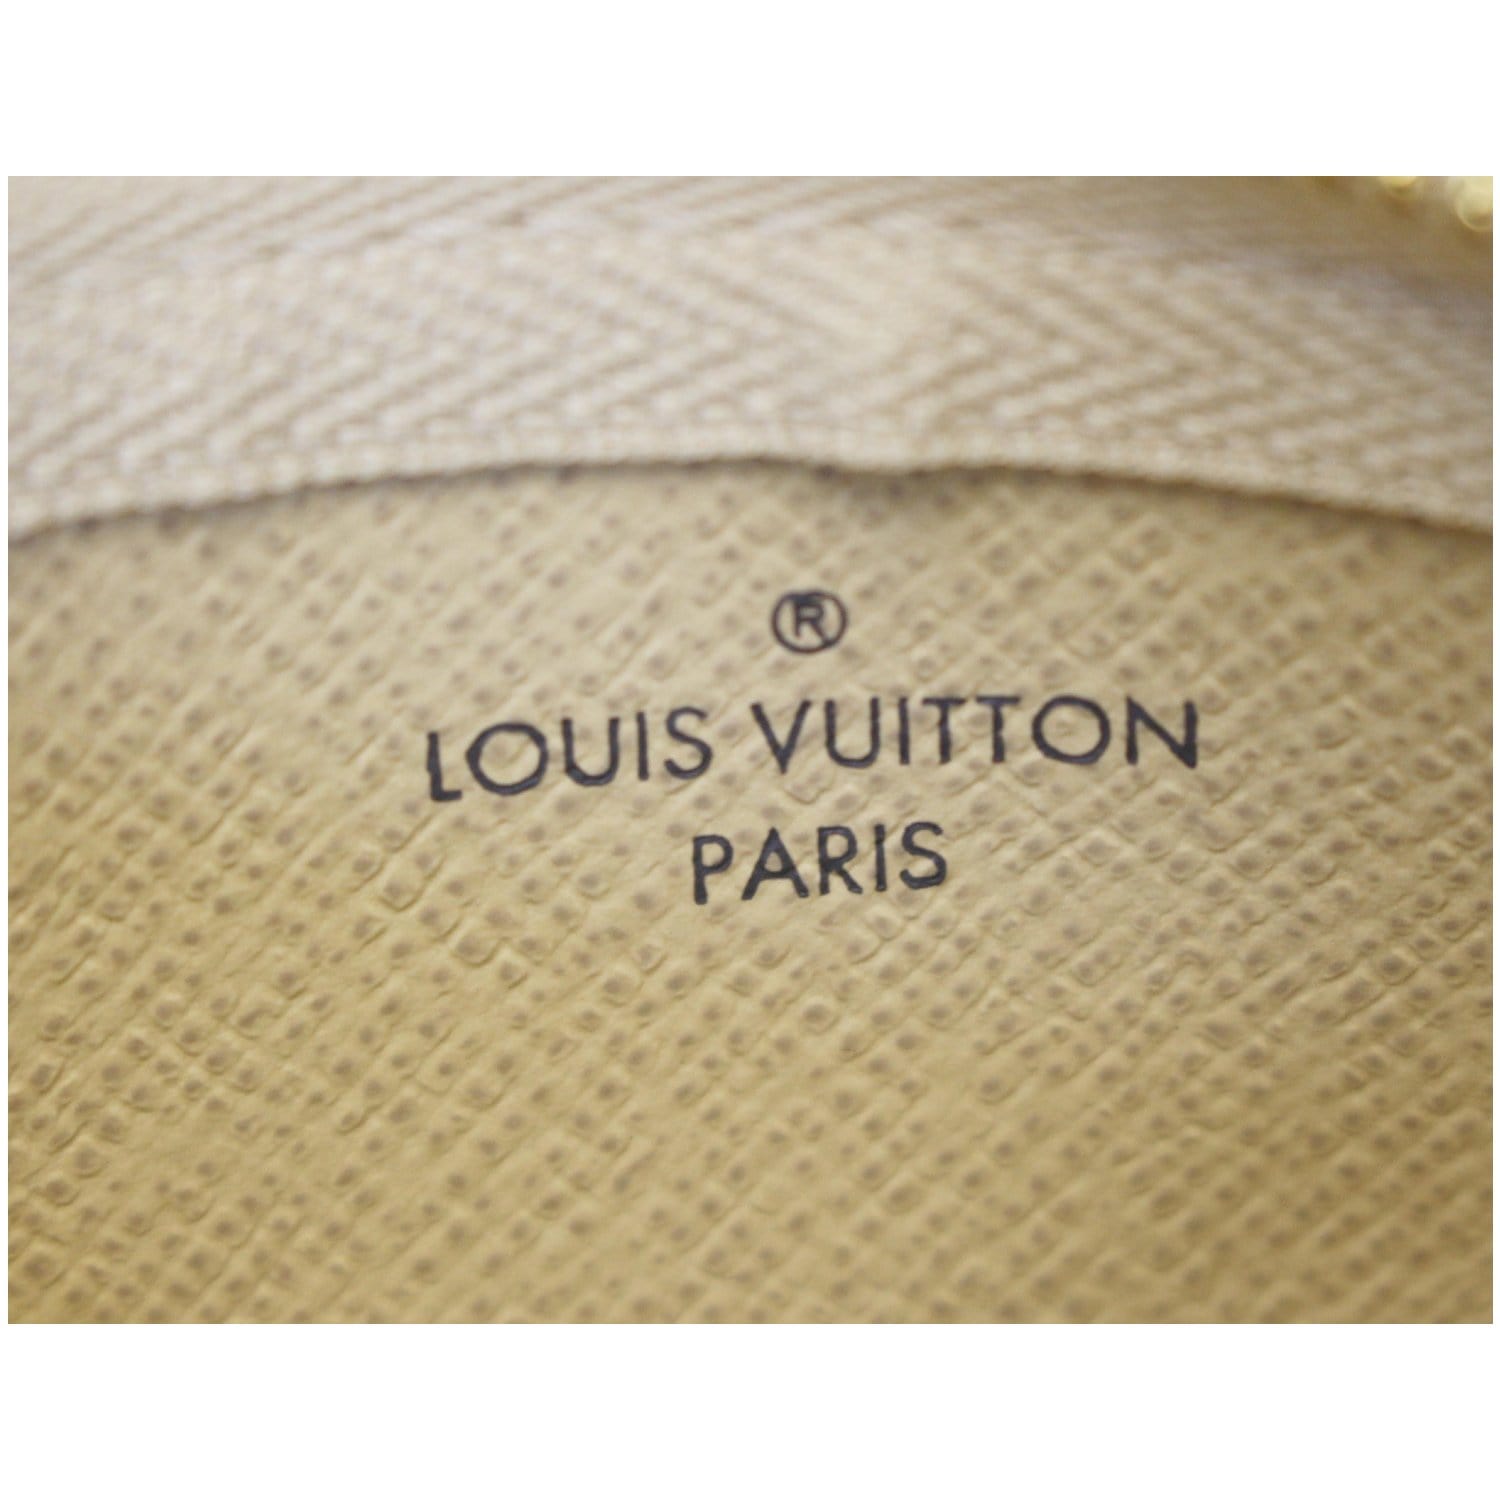 N62659 Louis Vuitton Key Pouch Damier Azur Coated Canvas - RRG052